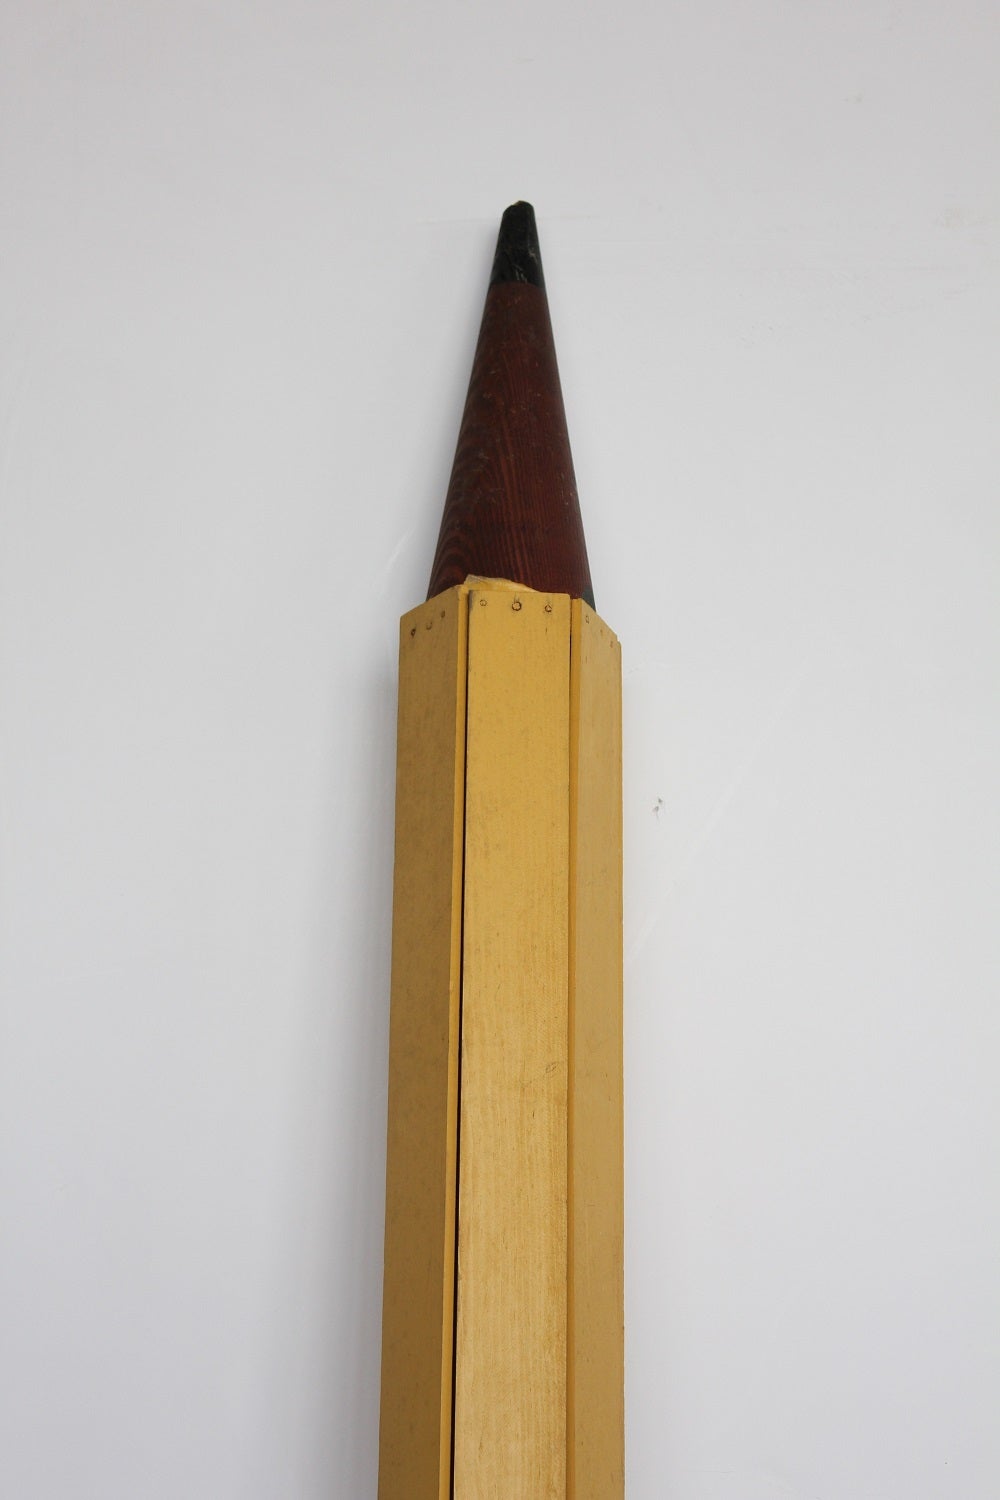 7ft Tall Folk Art Hand Made Wood Pencil